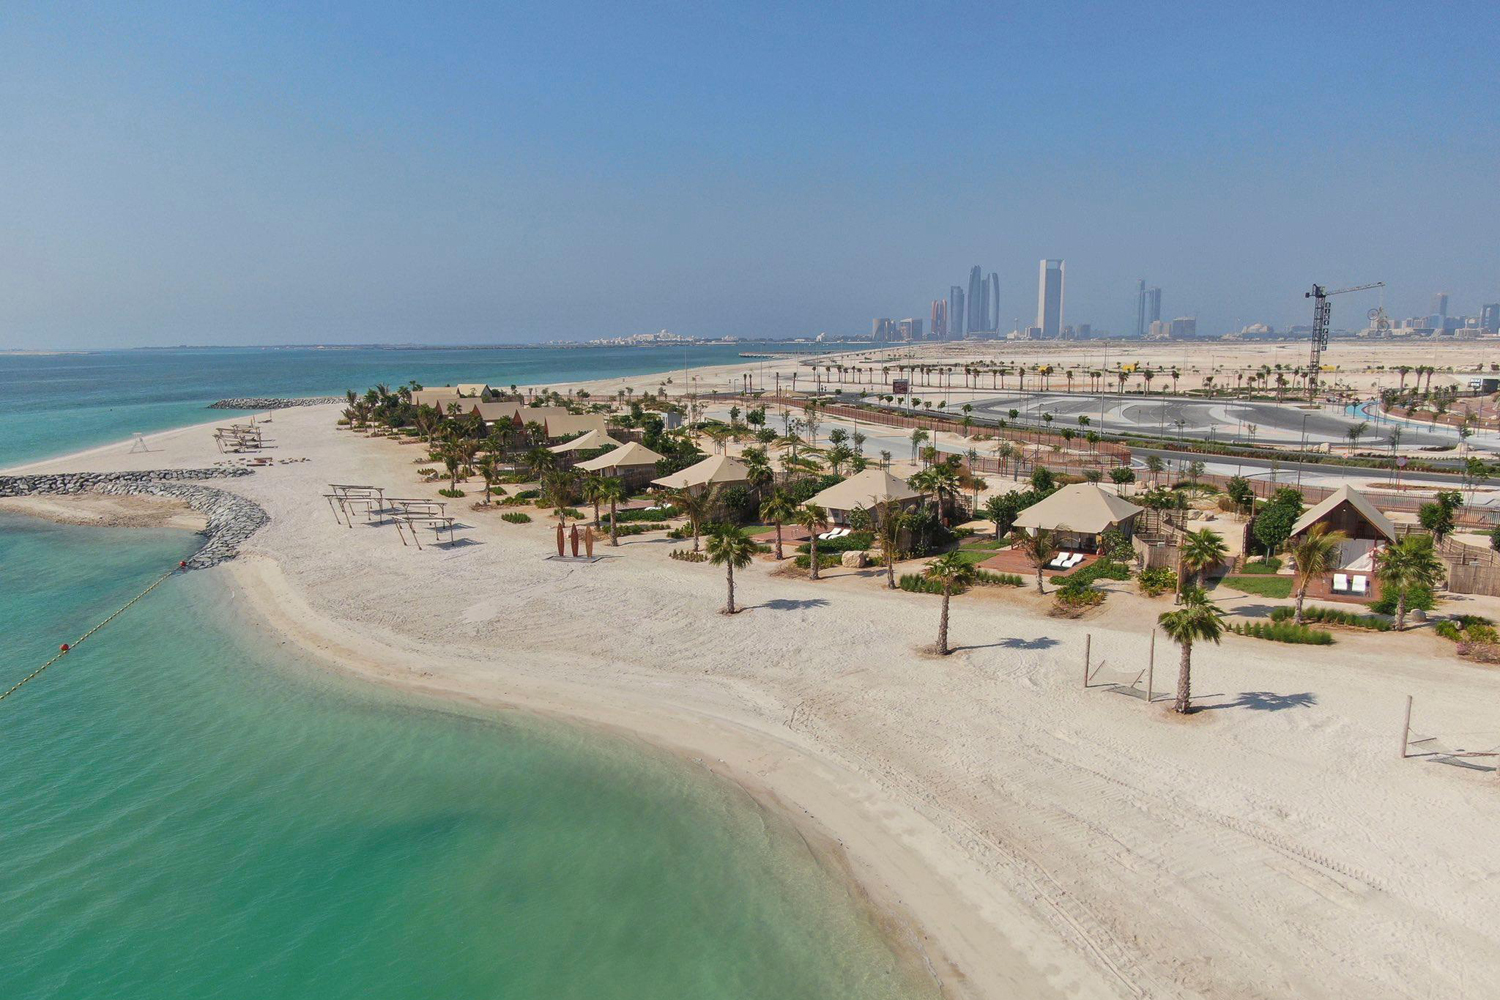 On the beach at Abu Dhabi | Abu dhabi travel, Abu dhabi, Dubai